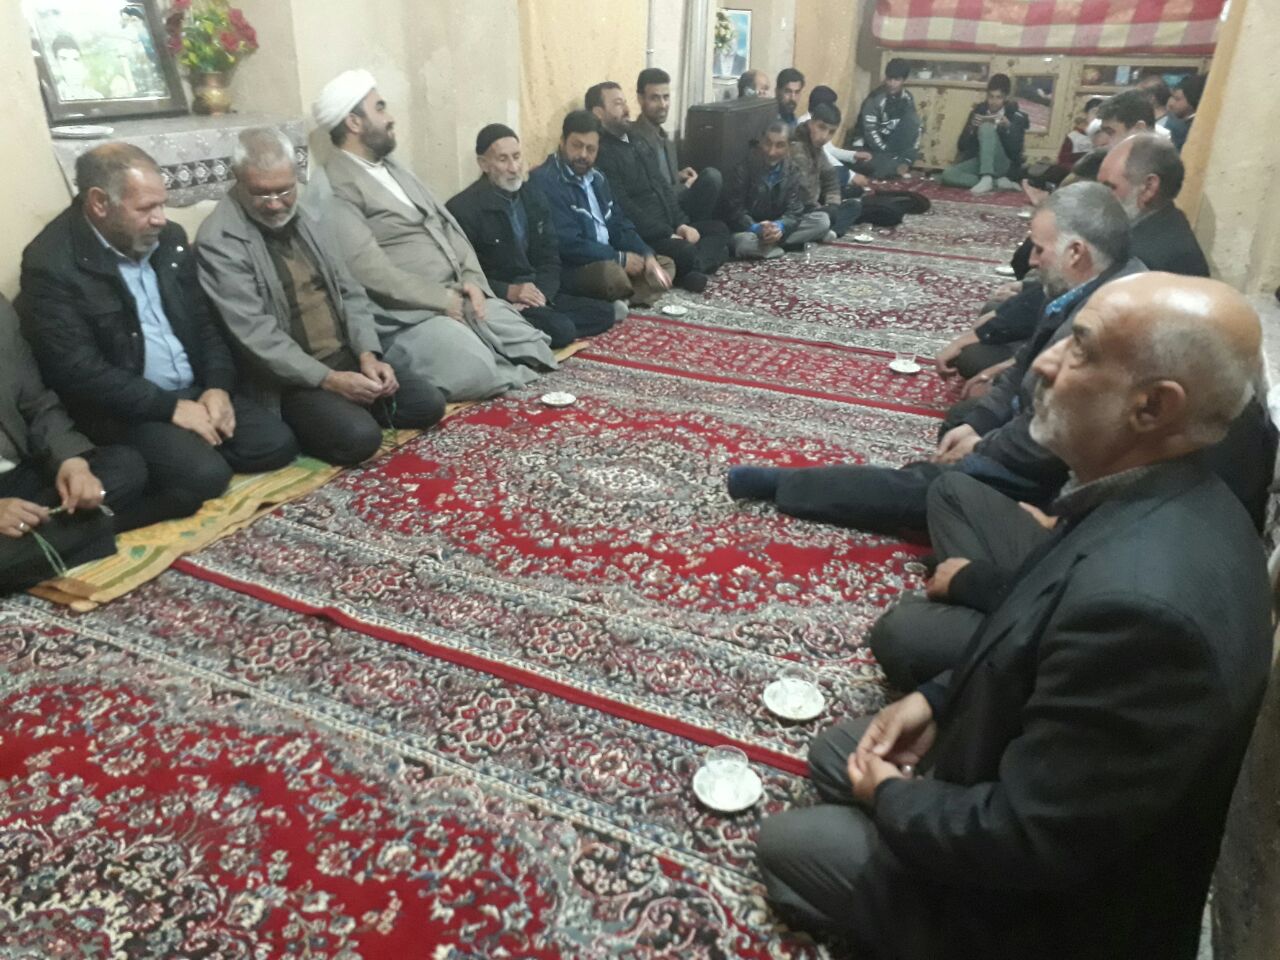 برگزاری مراسم دعا در منزل شهید خارکش، شهر کلاته خیج+عکس